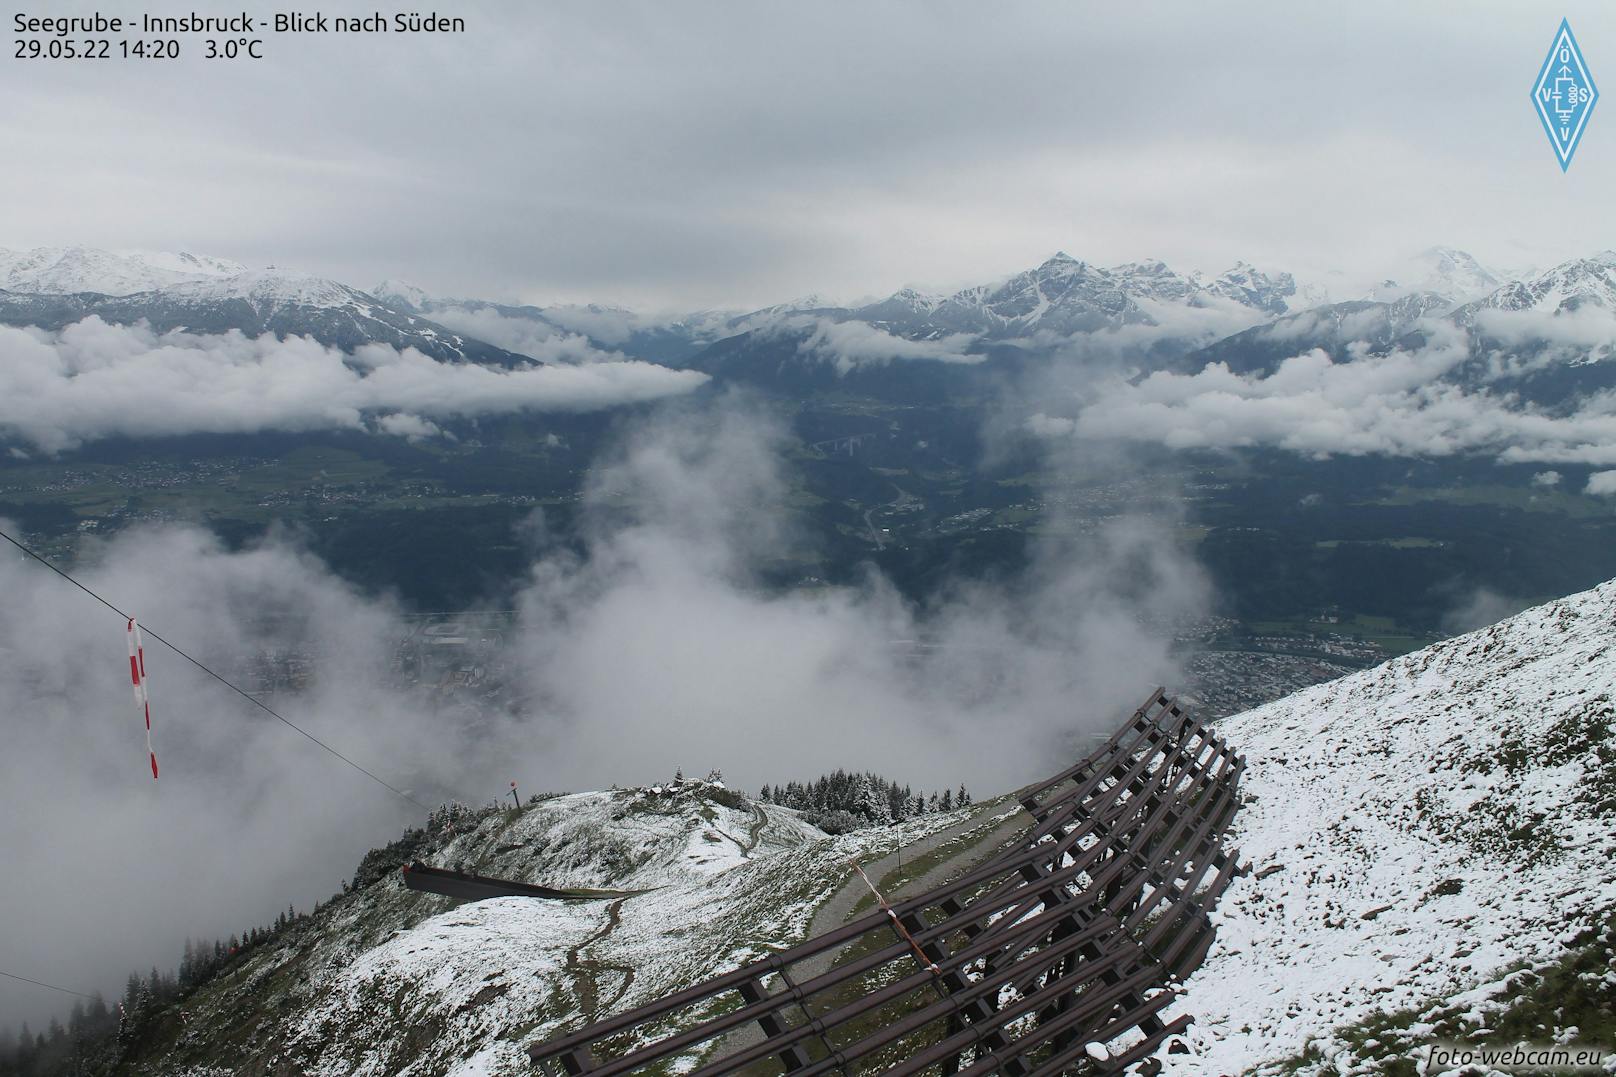 Schnee in den Bergen über Innsbruck. Hier der Blick von der Seegrube Richtung Süden.